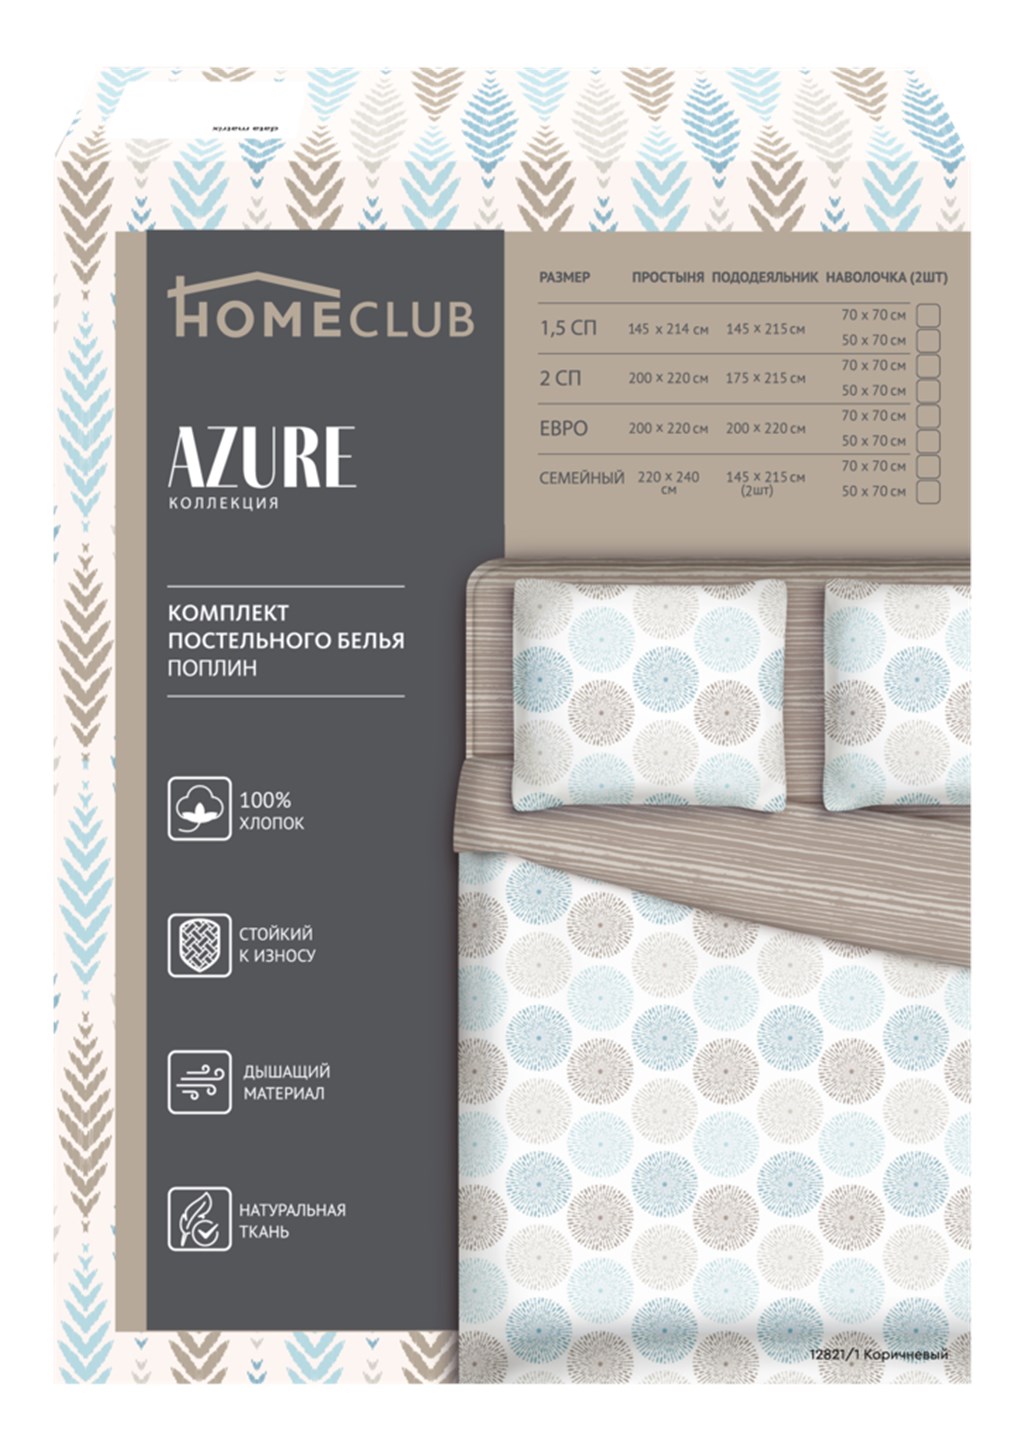 Комплект постельного белья Homeclub Azure полутораспальный поплин 70 х 70 см